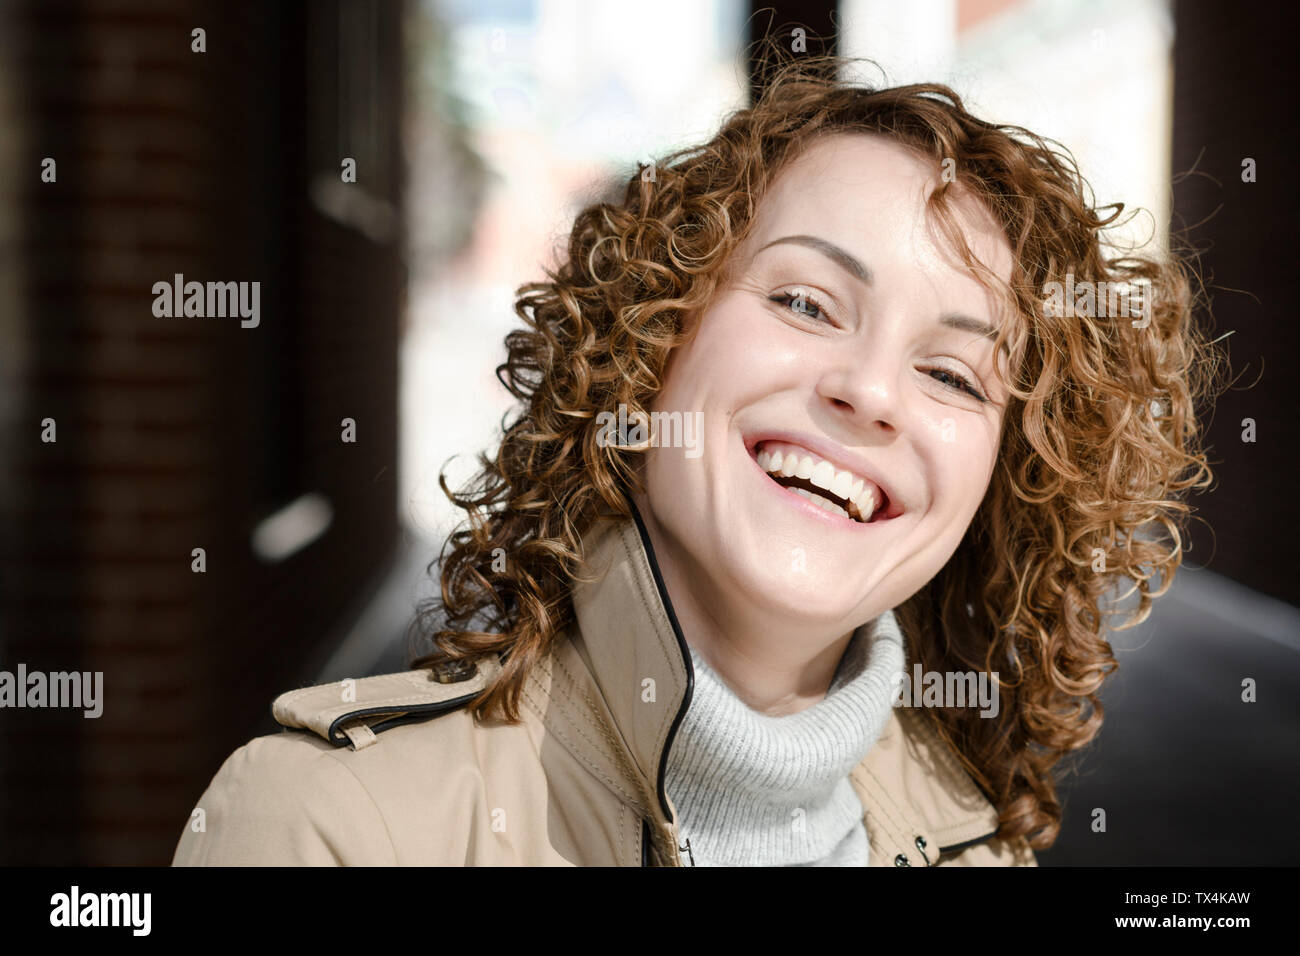 Portrait of laughing woman avec les cheveux bouclés Banque D'Images